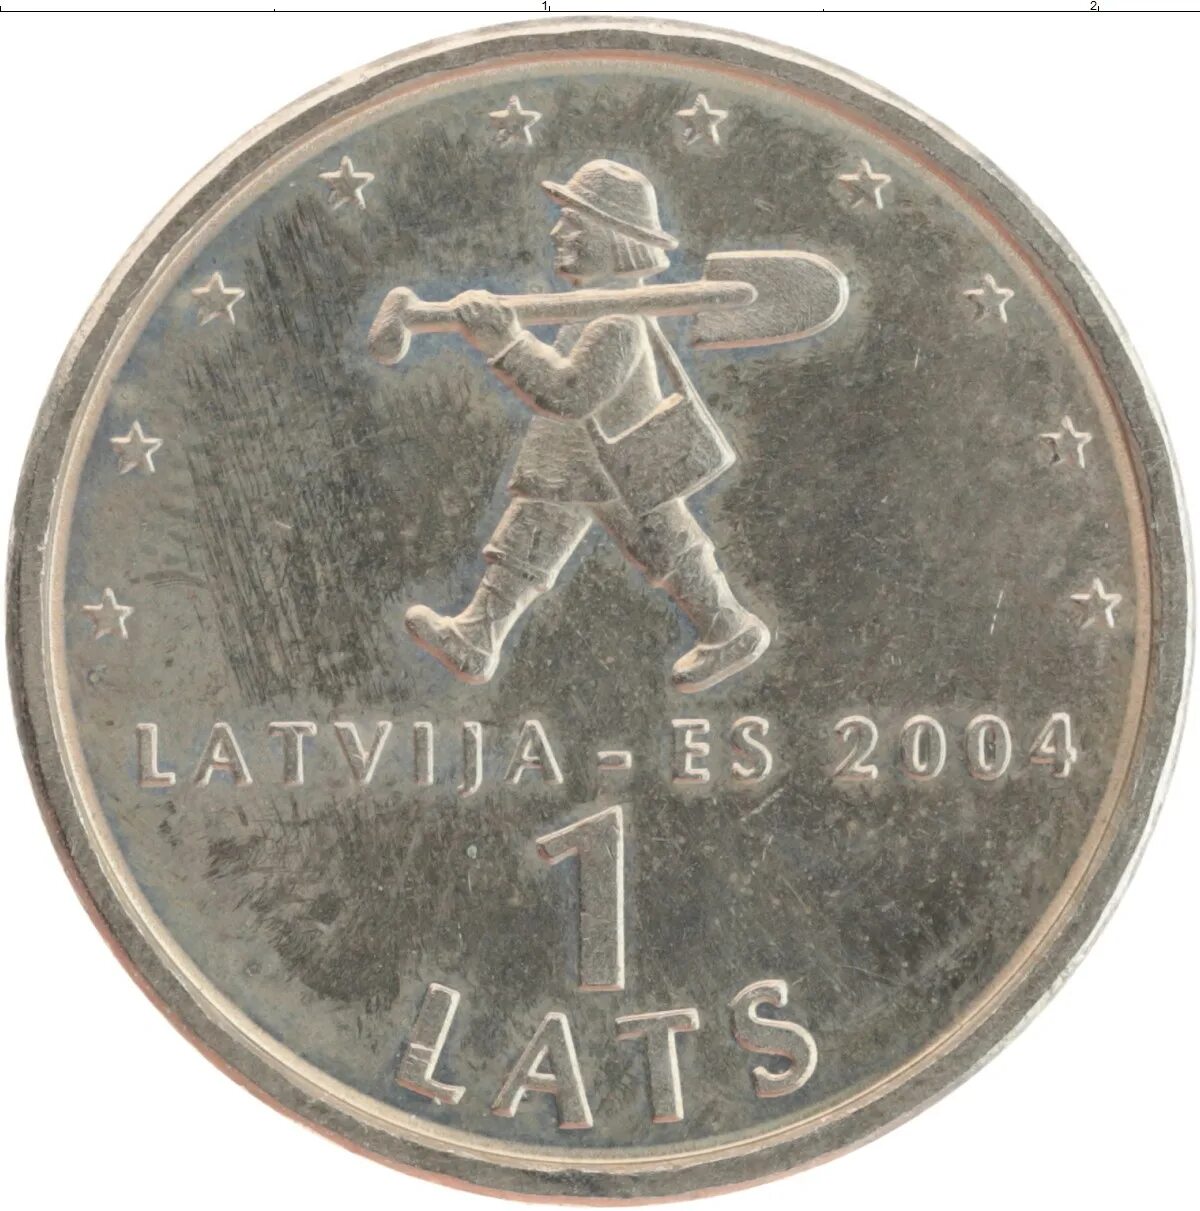 33 16 21. Монеты Латвии. Монеты Риги. Монета 2 медь Латвия. Монета с рижским памятником.